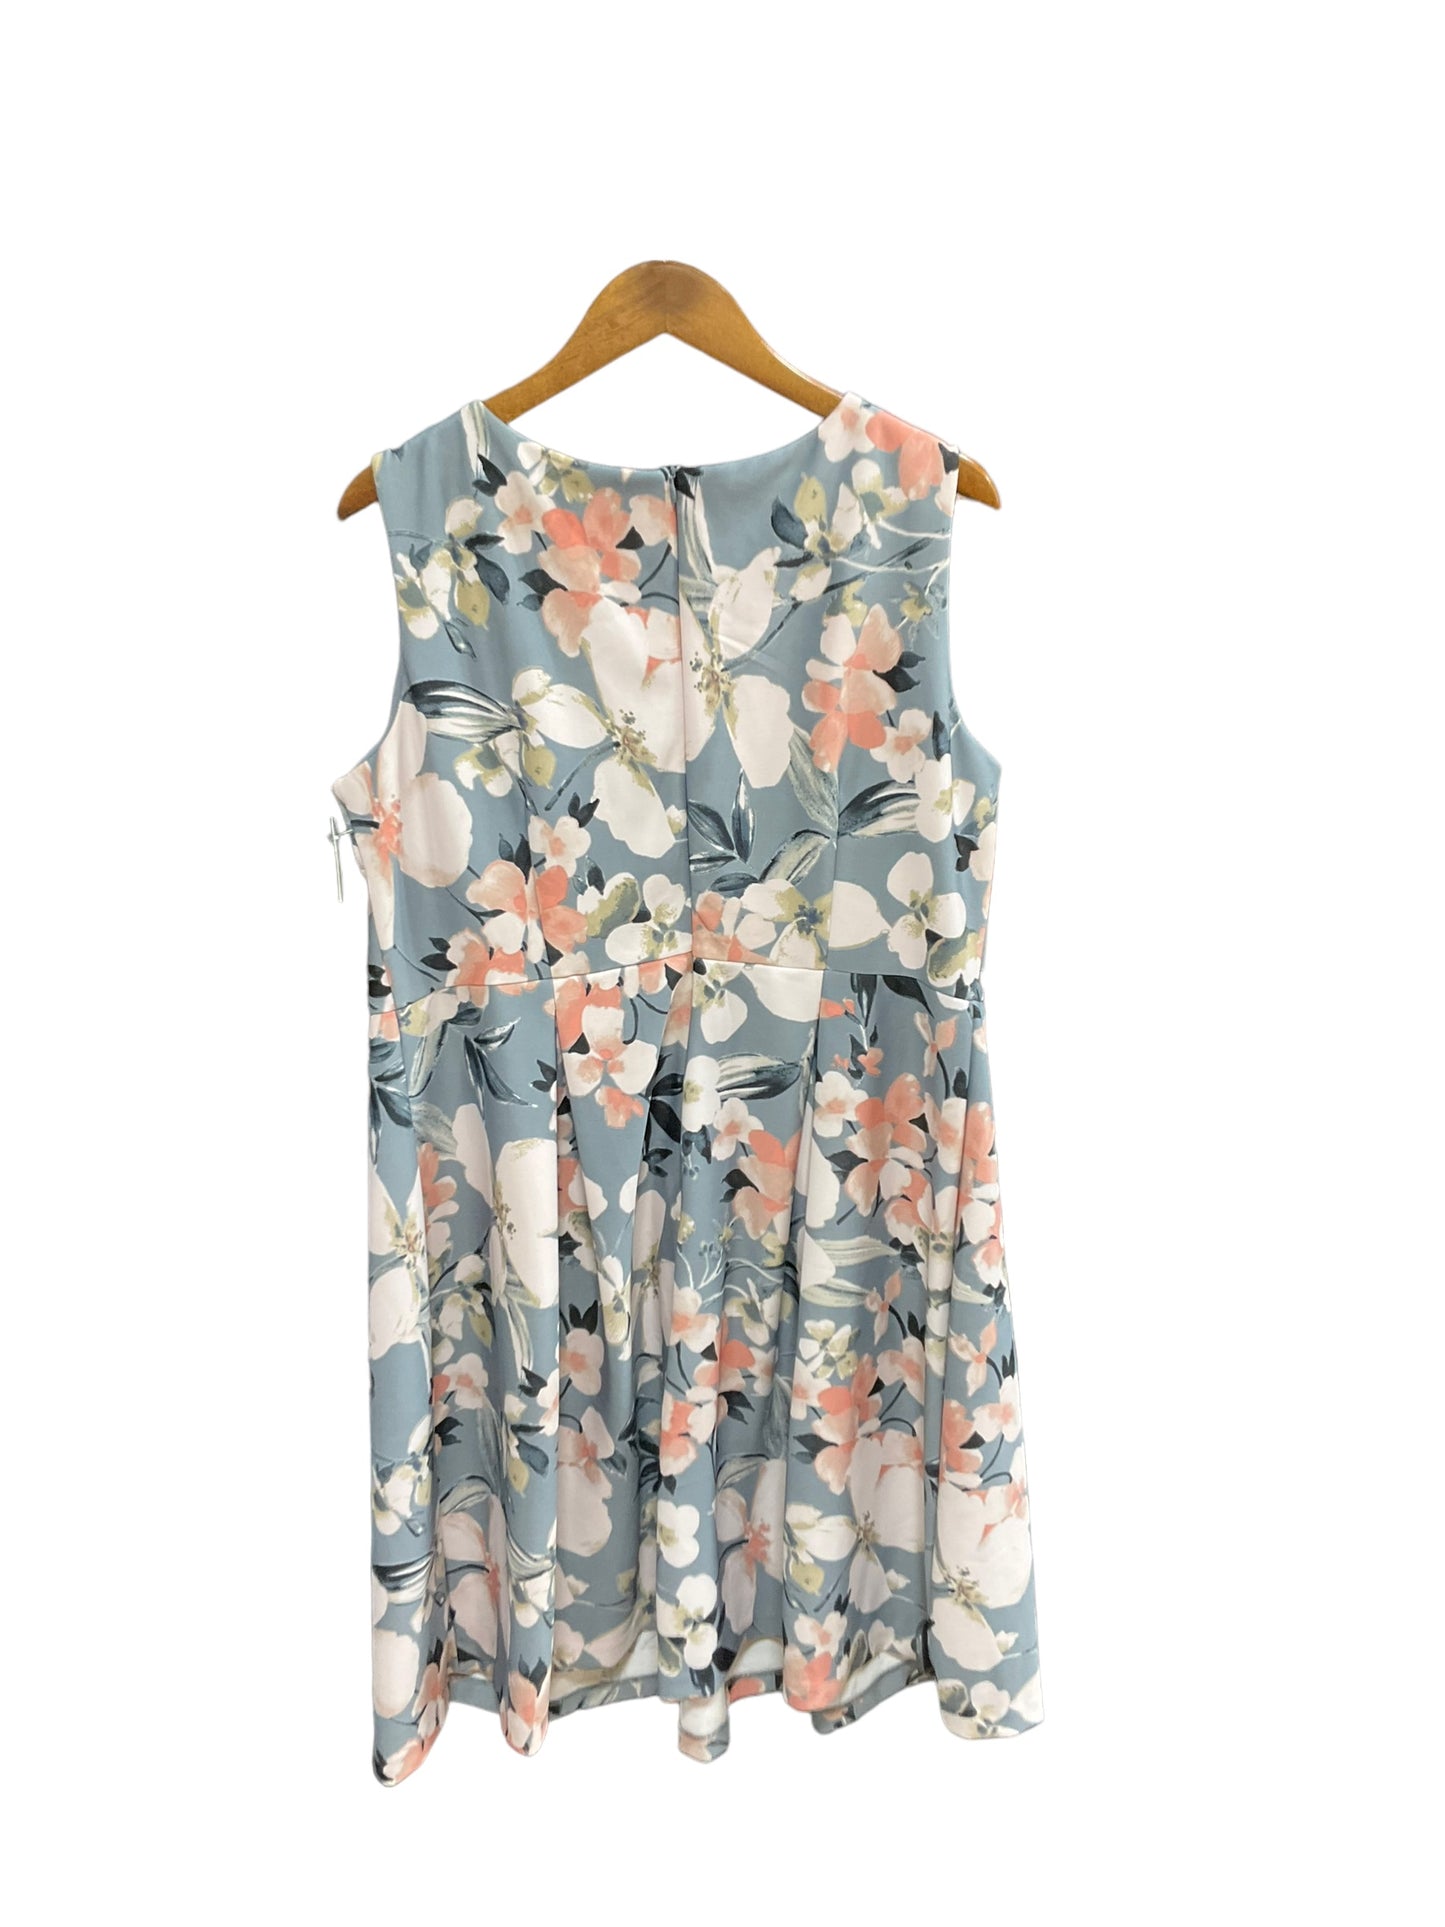 Dress Casual Midi By Lane Bryant  Size: 1x